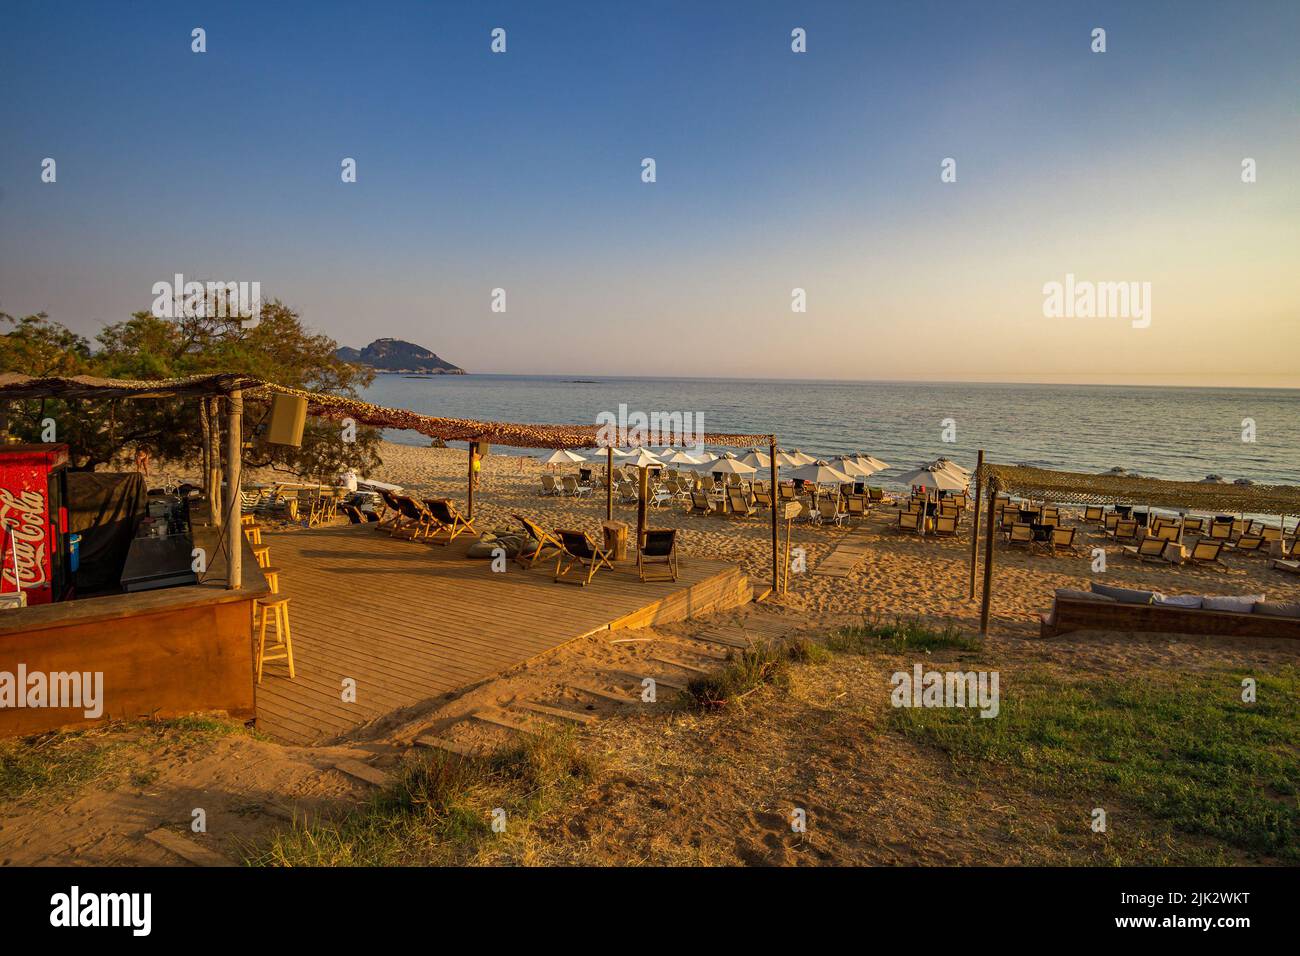 La famosa spiaggia di Romanos si trova vicino al villaggio costiero di Romanos e vicino al famoso Luxury Resort Costa Navarino, una delle principali destinazioni turistiche di Messe Foto Stock